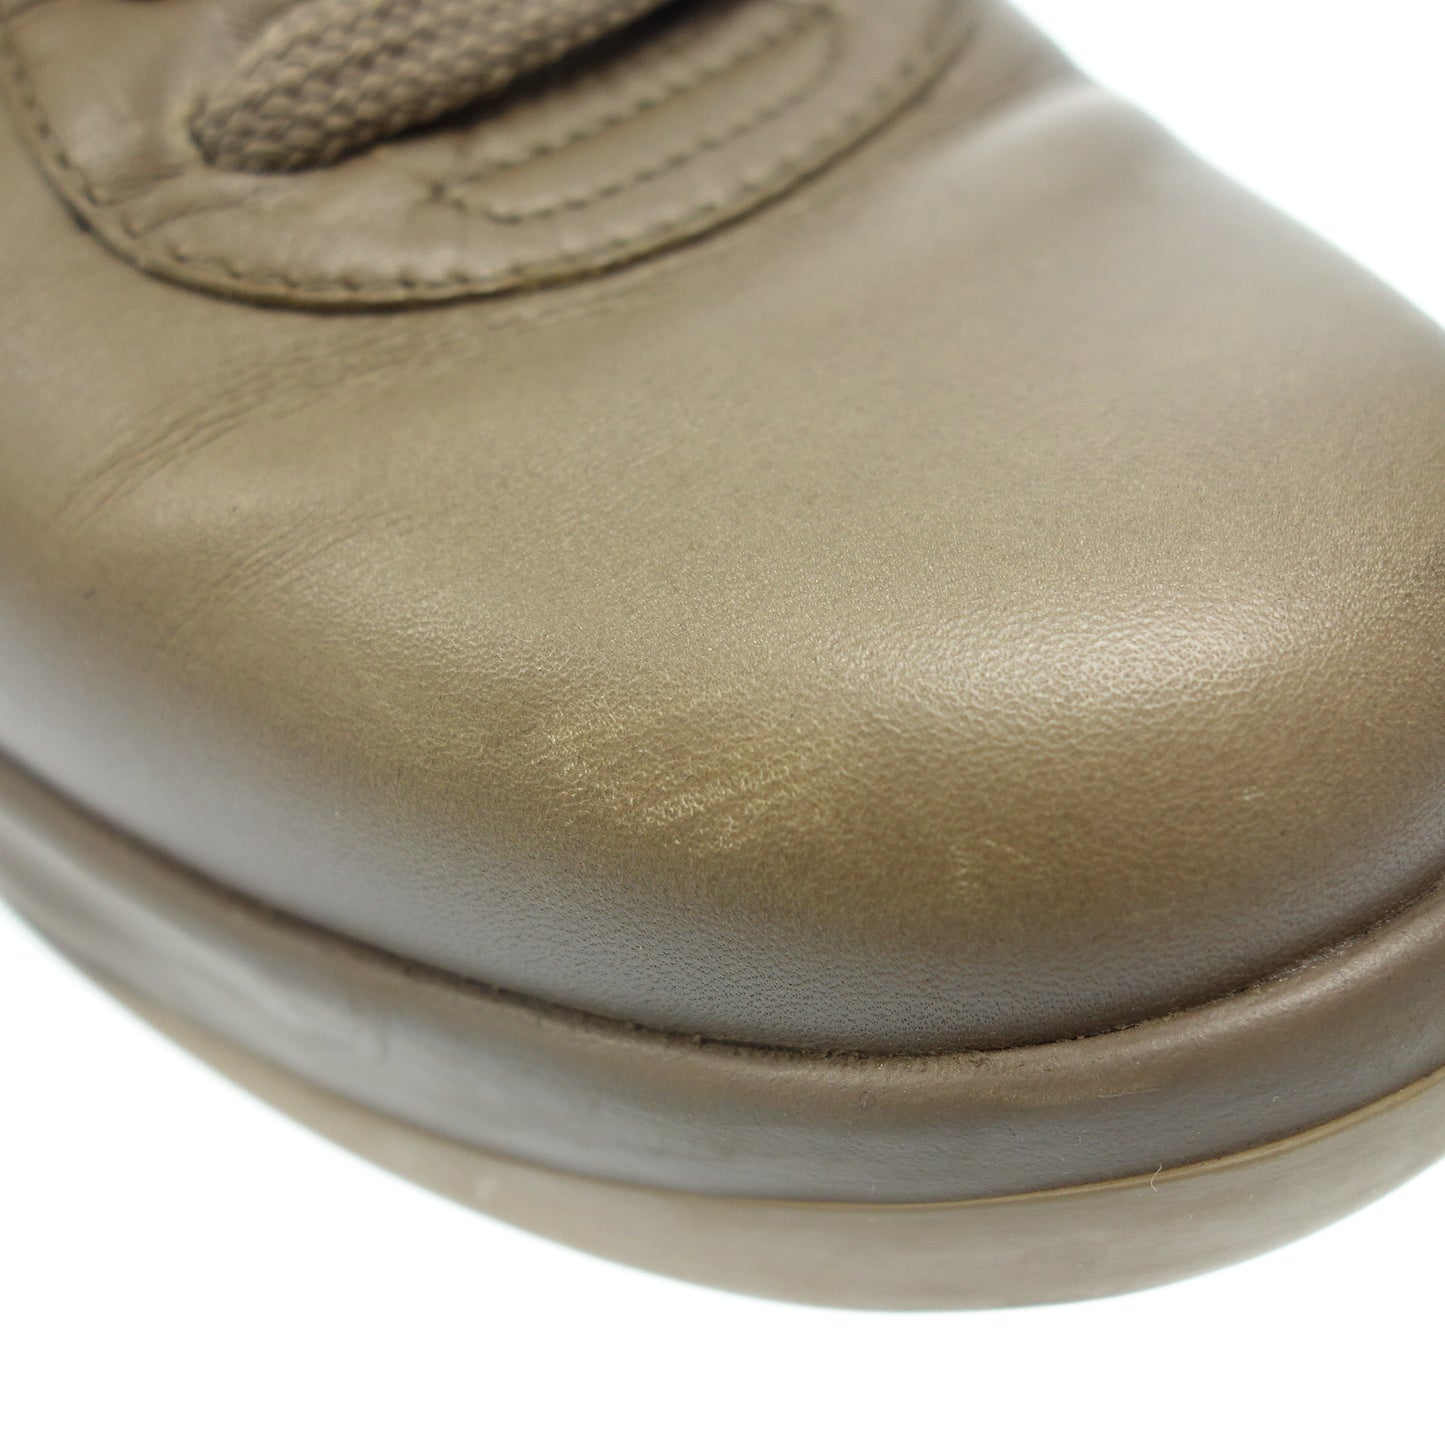 路易威登 皮革运动鞋 低帮鞋底徽标 女式 37 棕色 LOIUS VUITTON 路易威登